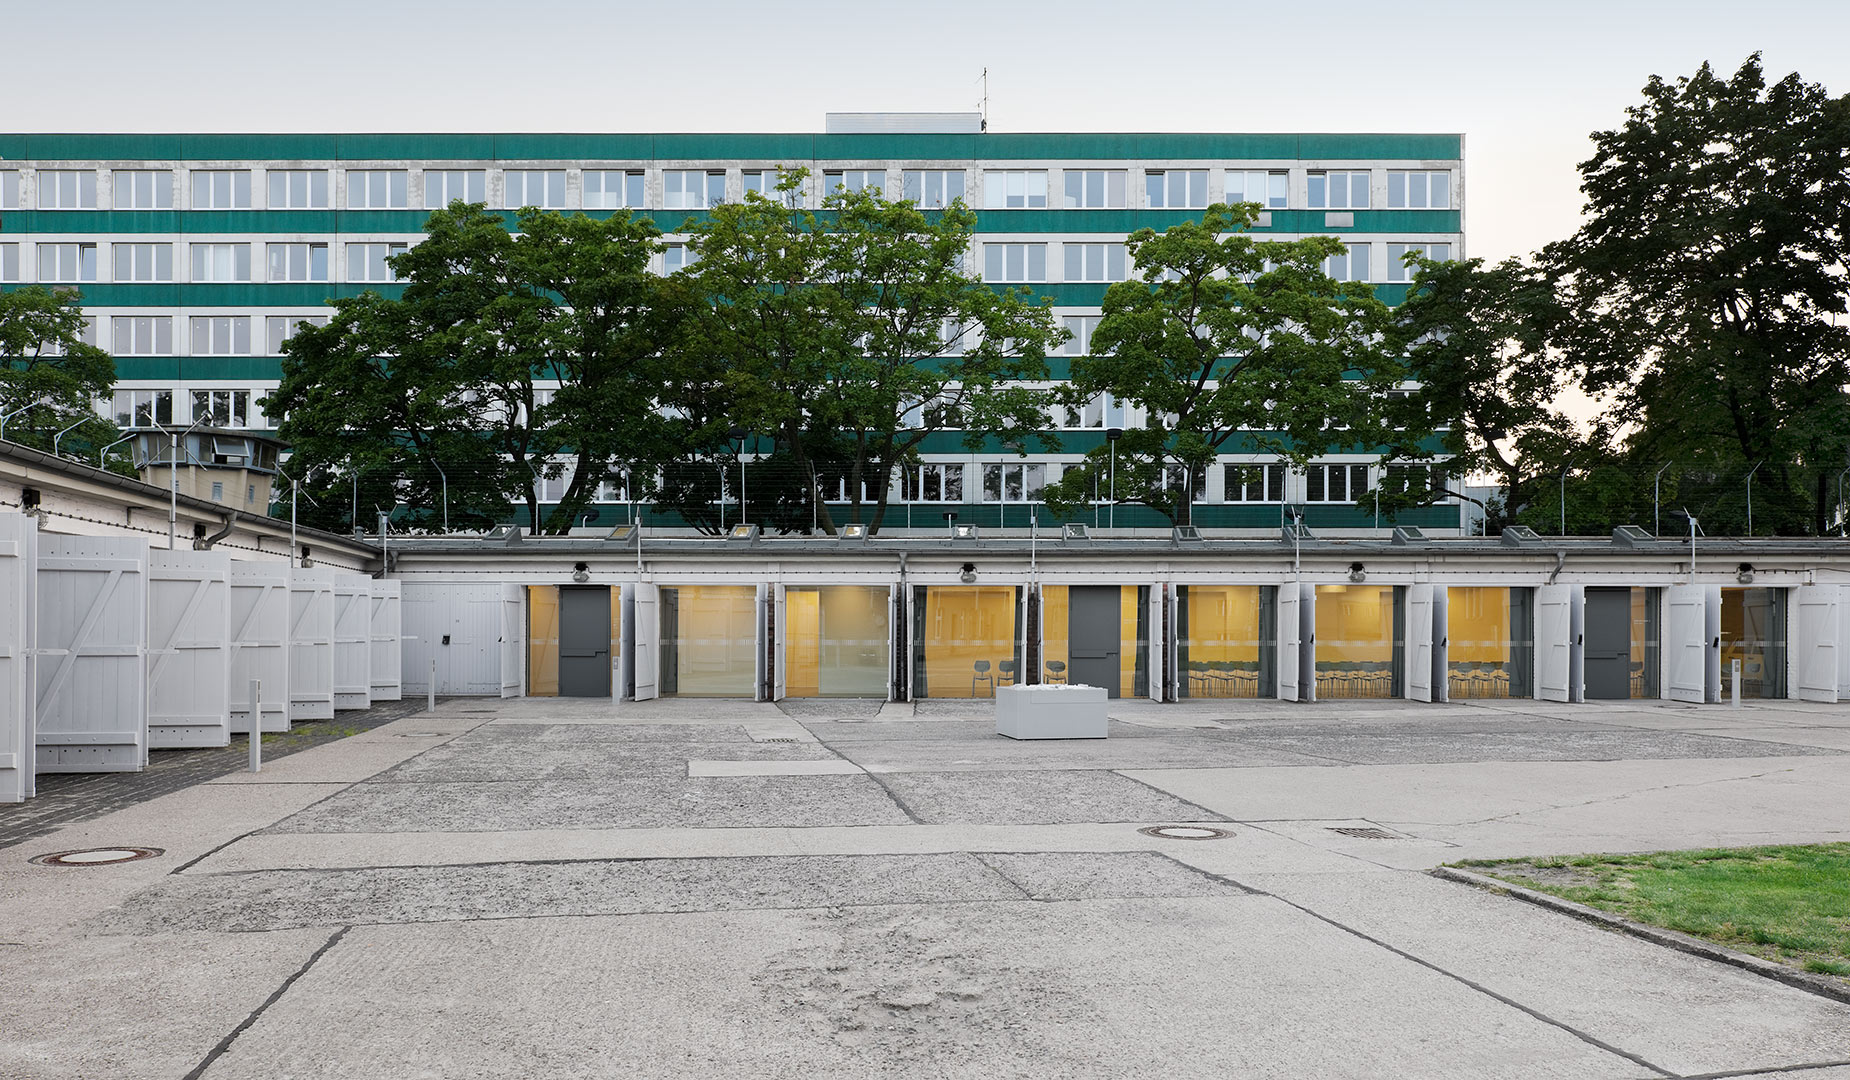 Gedenkstätte Hohenschönhausen 1. BA, Berlin | Sauerzapfe Architekten